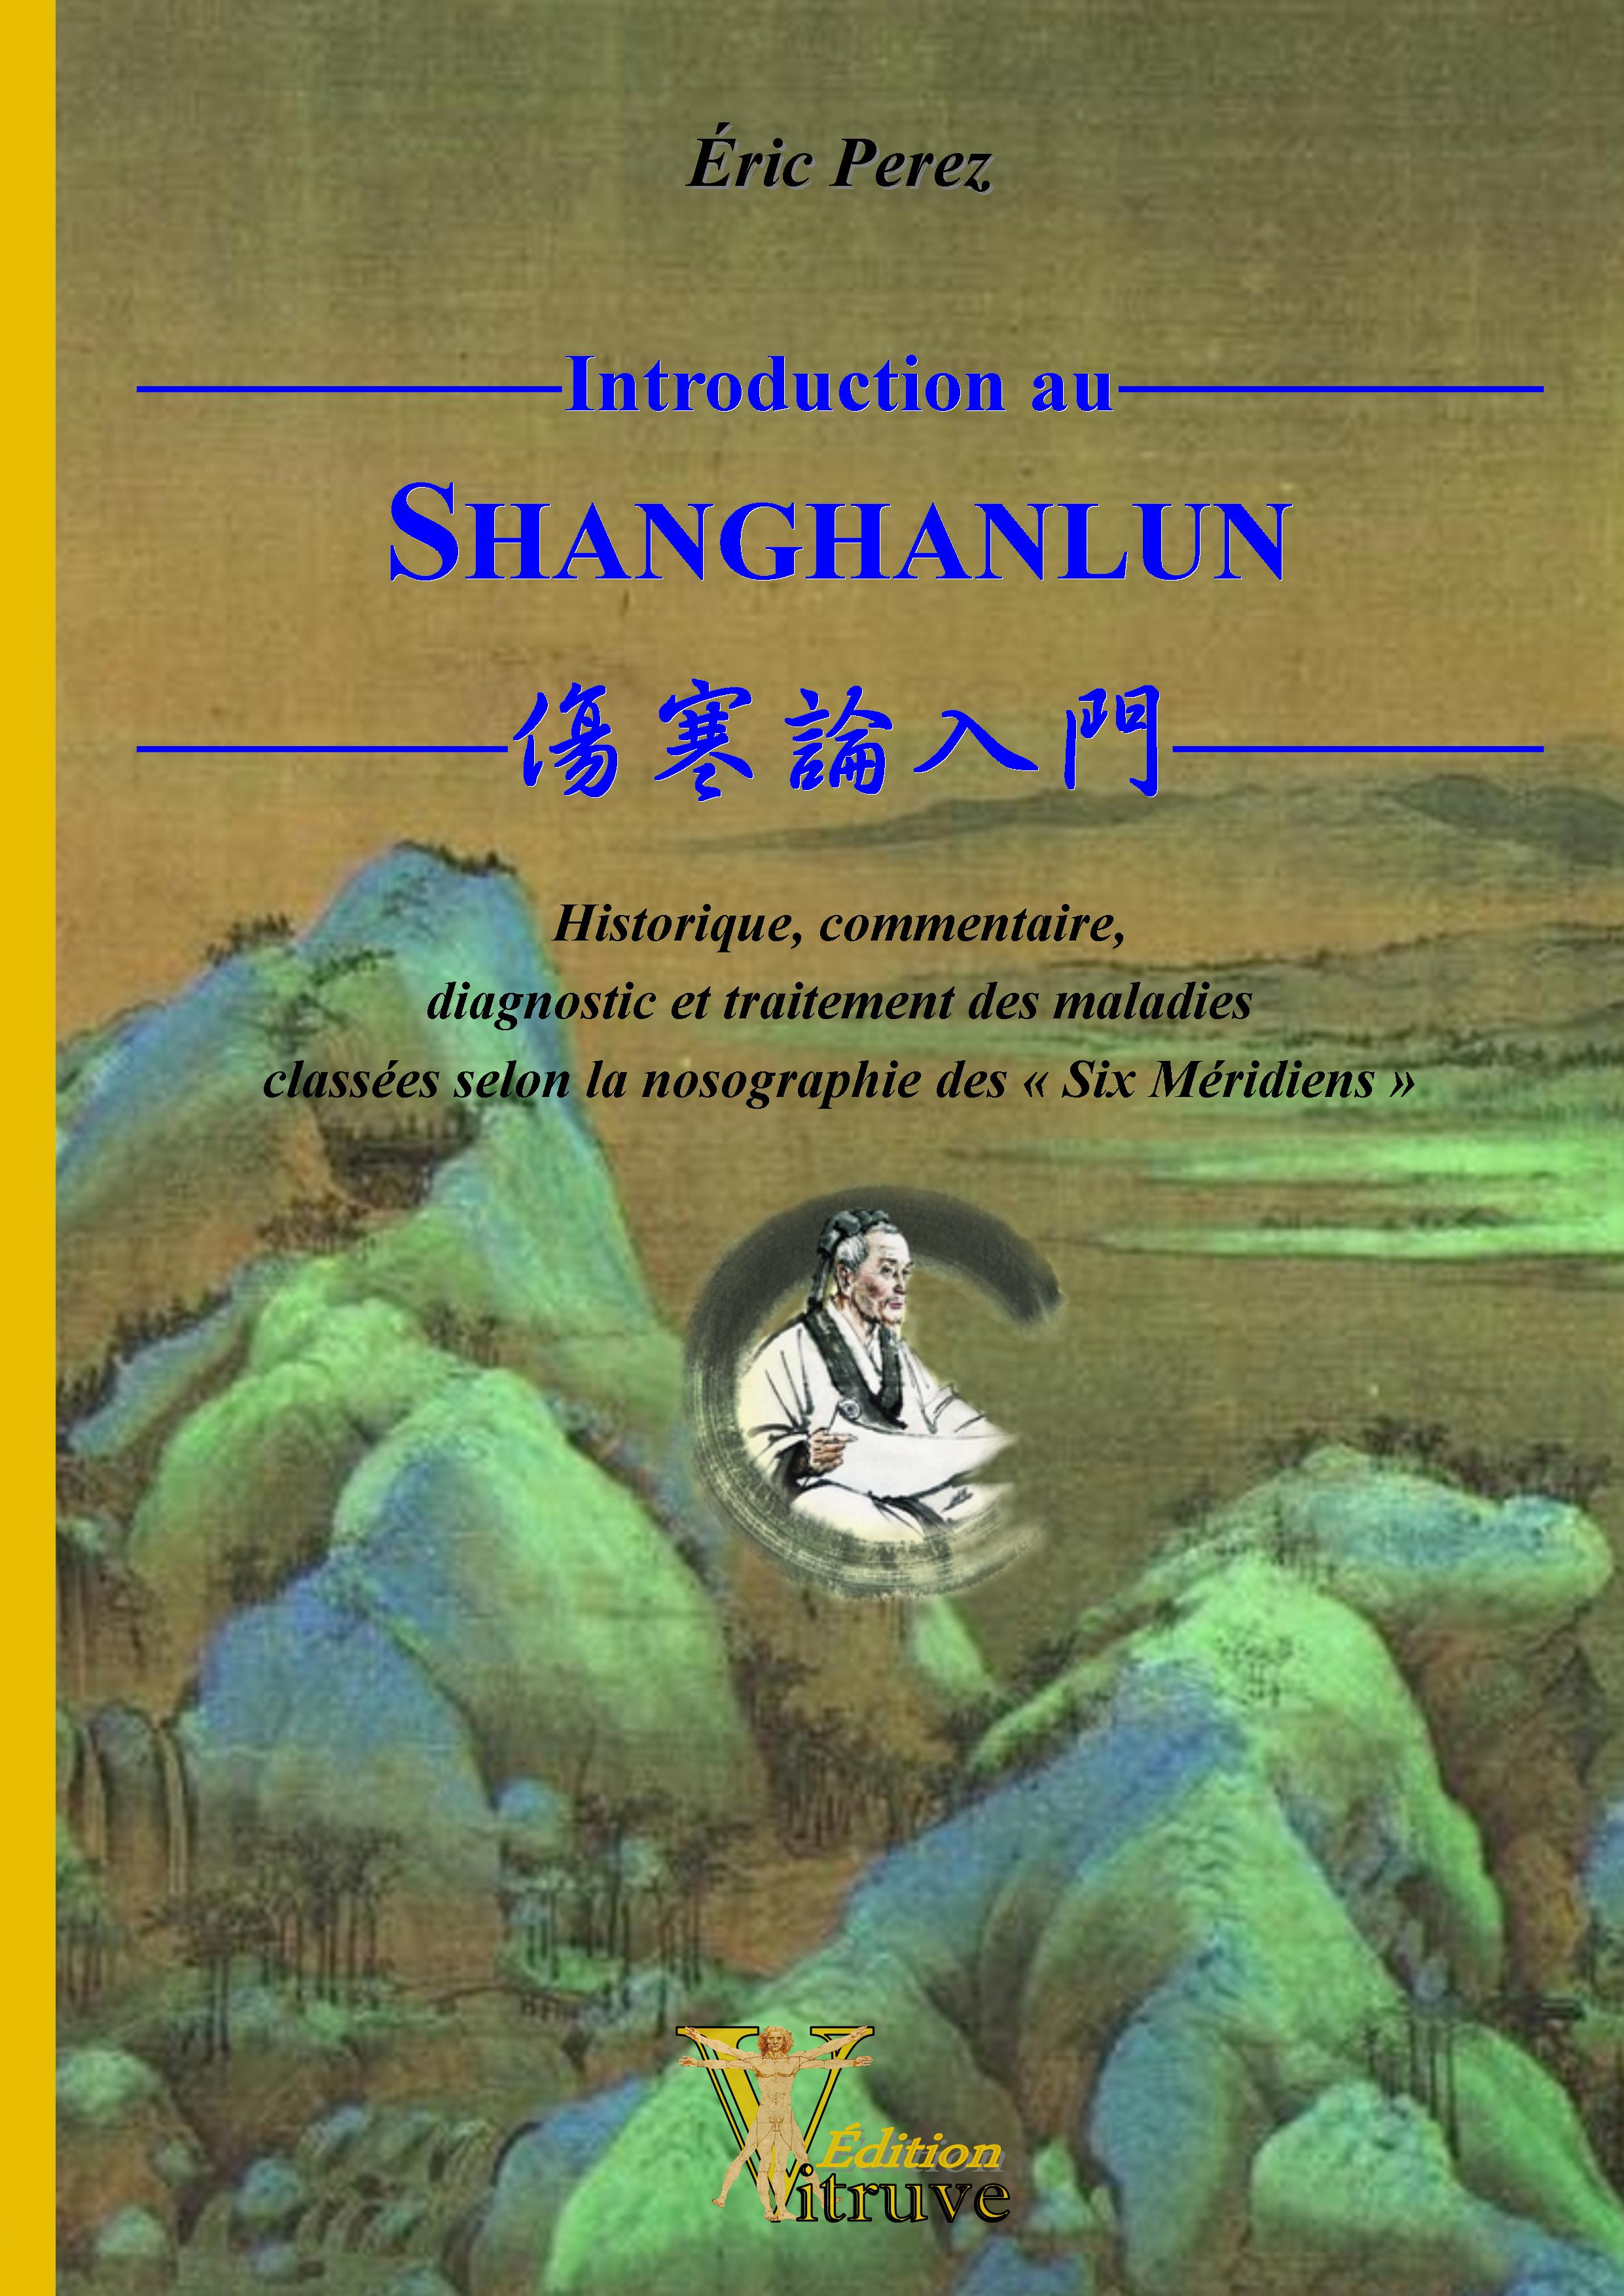 Introduction au SHANGHANLUN